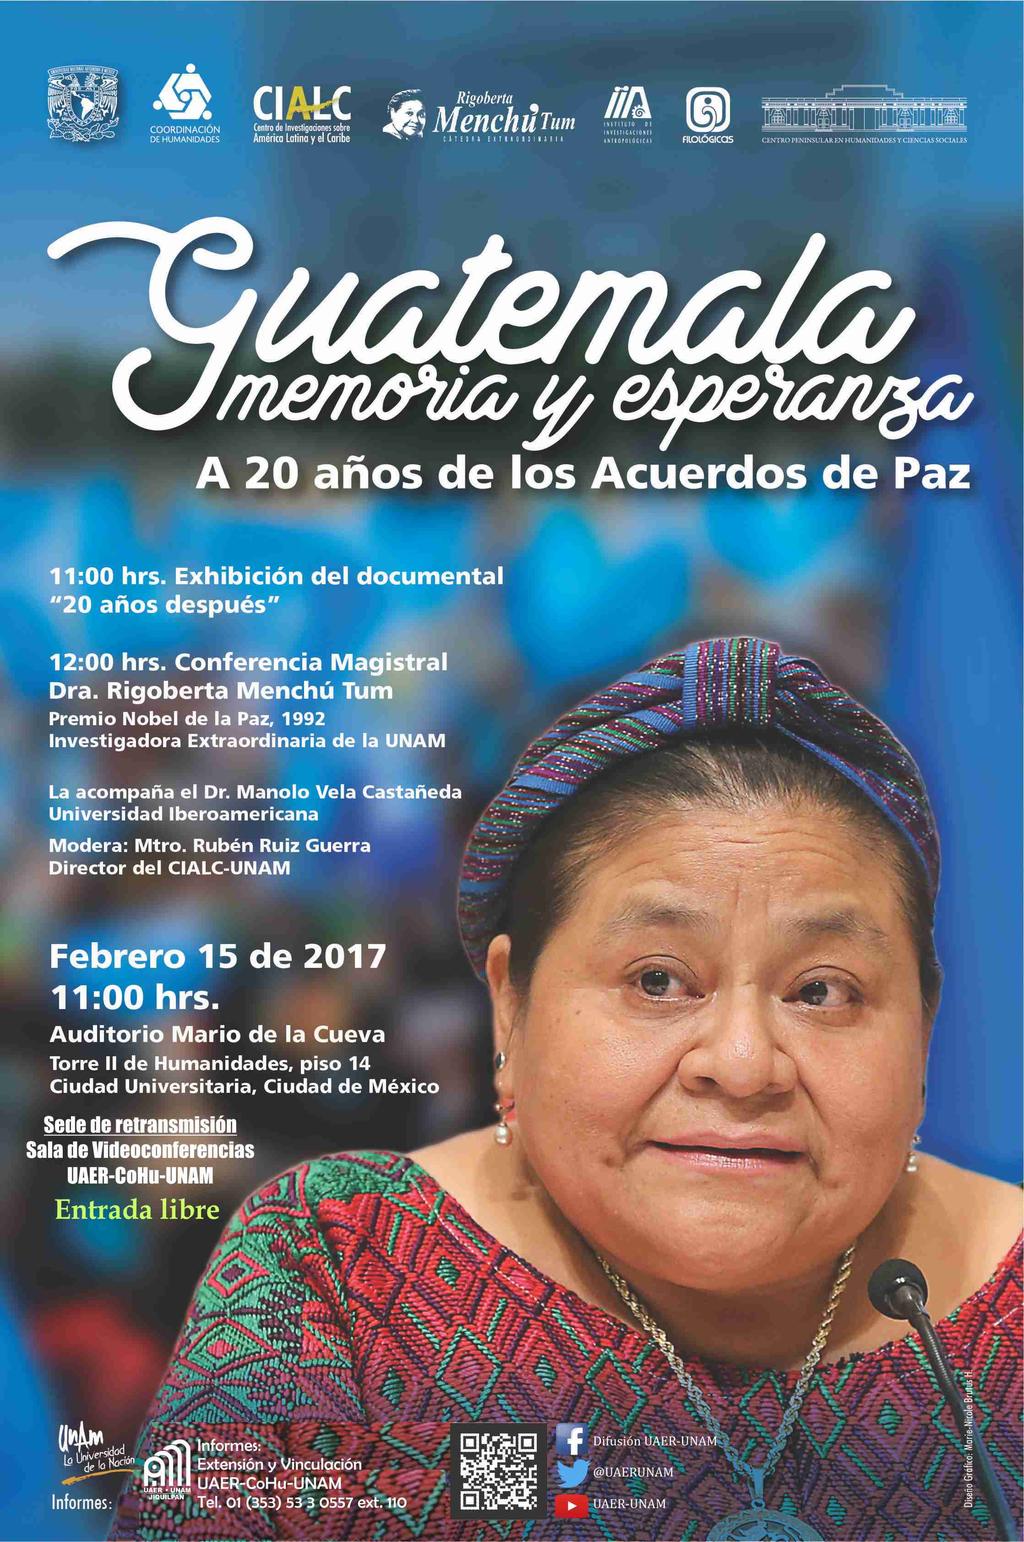 invitan a la videoconferencia Guatemala memoria y esperanza a 20 años de los Acuerdos de Paz 11: 00 hrs- Exhibición del documental "20 años después" 12:00 hrs. Conferencia magistral Dra.